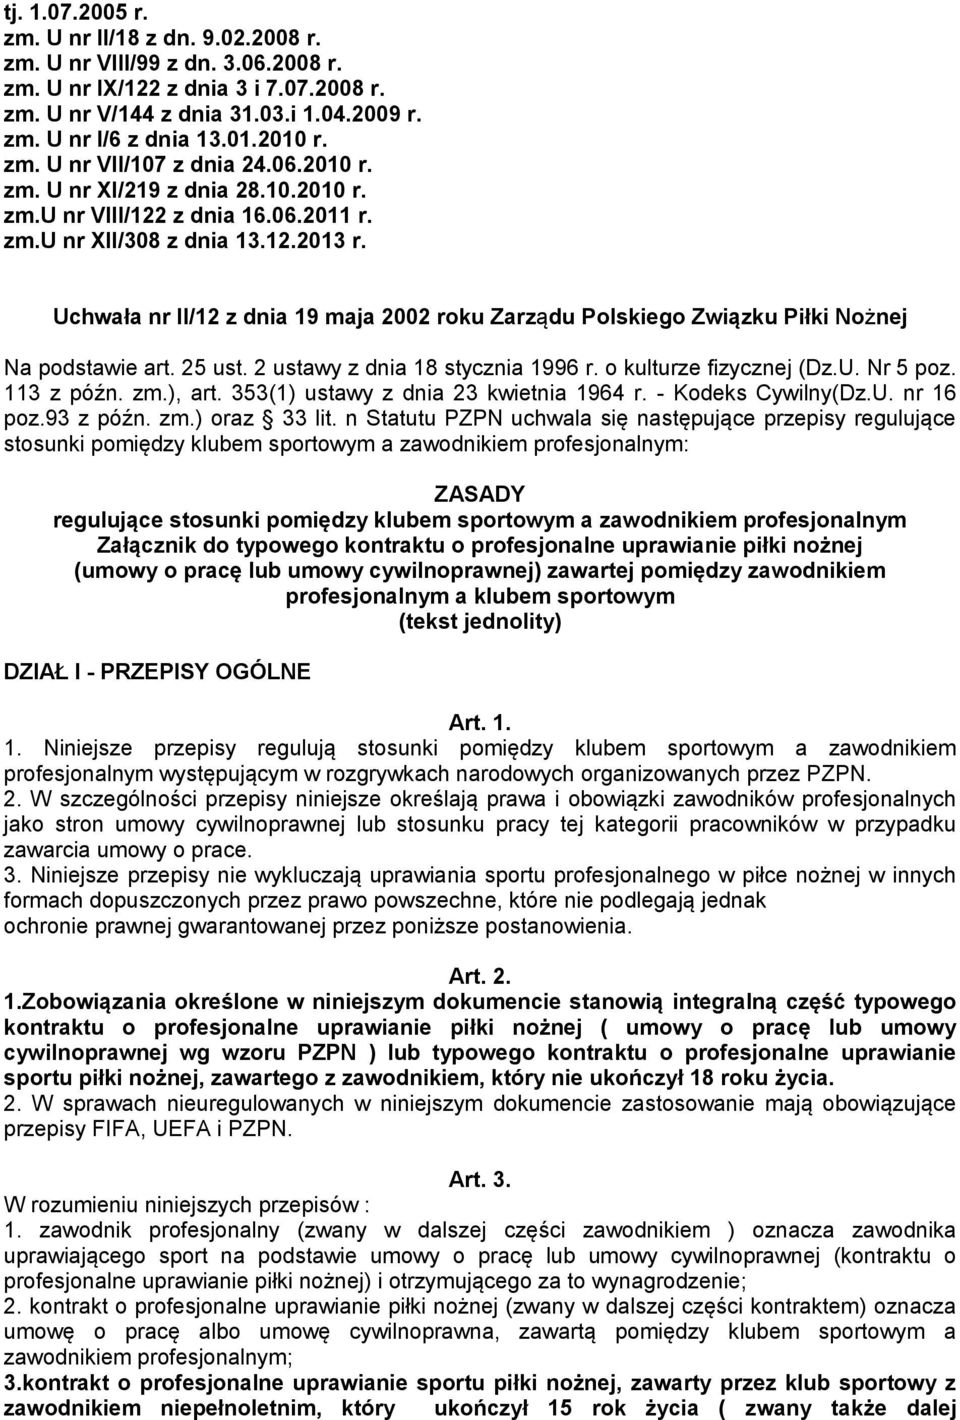 Uchwała nr II/12 z dnia 19 maja 2002 roku Zarządu Polskiego Związku Piłki Nożnej Na podstawie art. 25 ust. 2 ustawy z dnia 18 stycznia 1996 r. o kulturze fizycznej (Dz.U. Nr 5 poz. 113 z późn. zm.